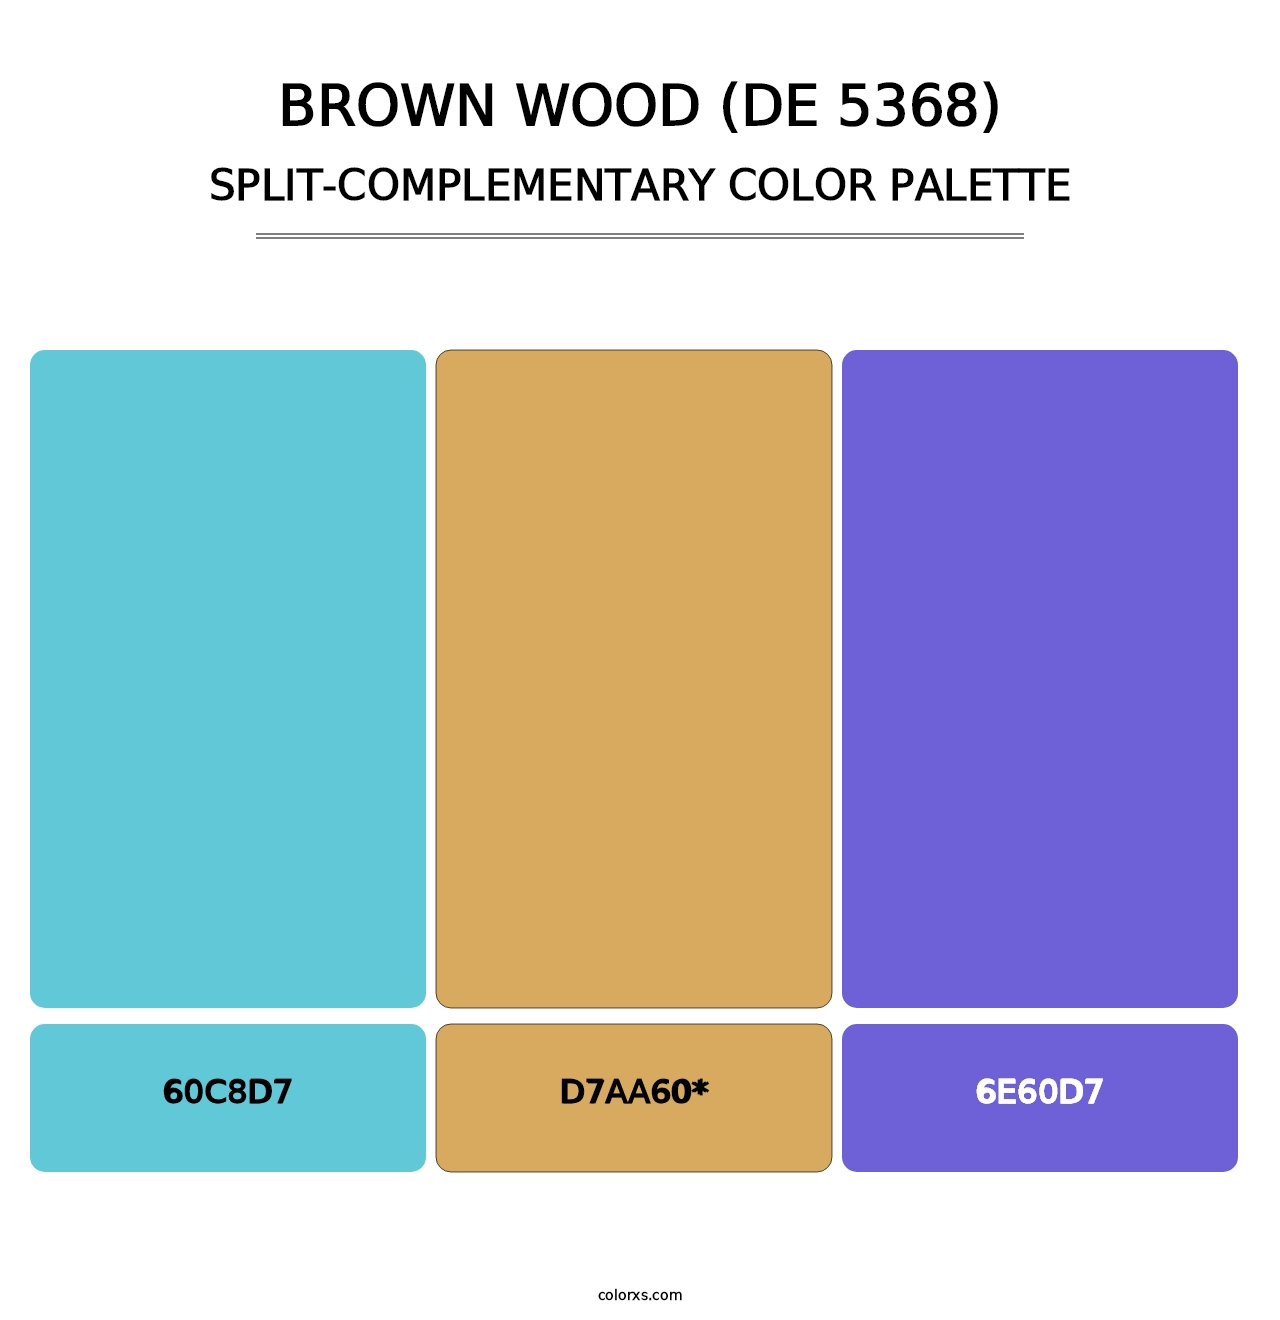 Brown Wood (DE 5368) - Split-Complementary Color Palette